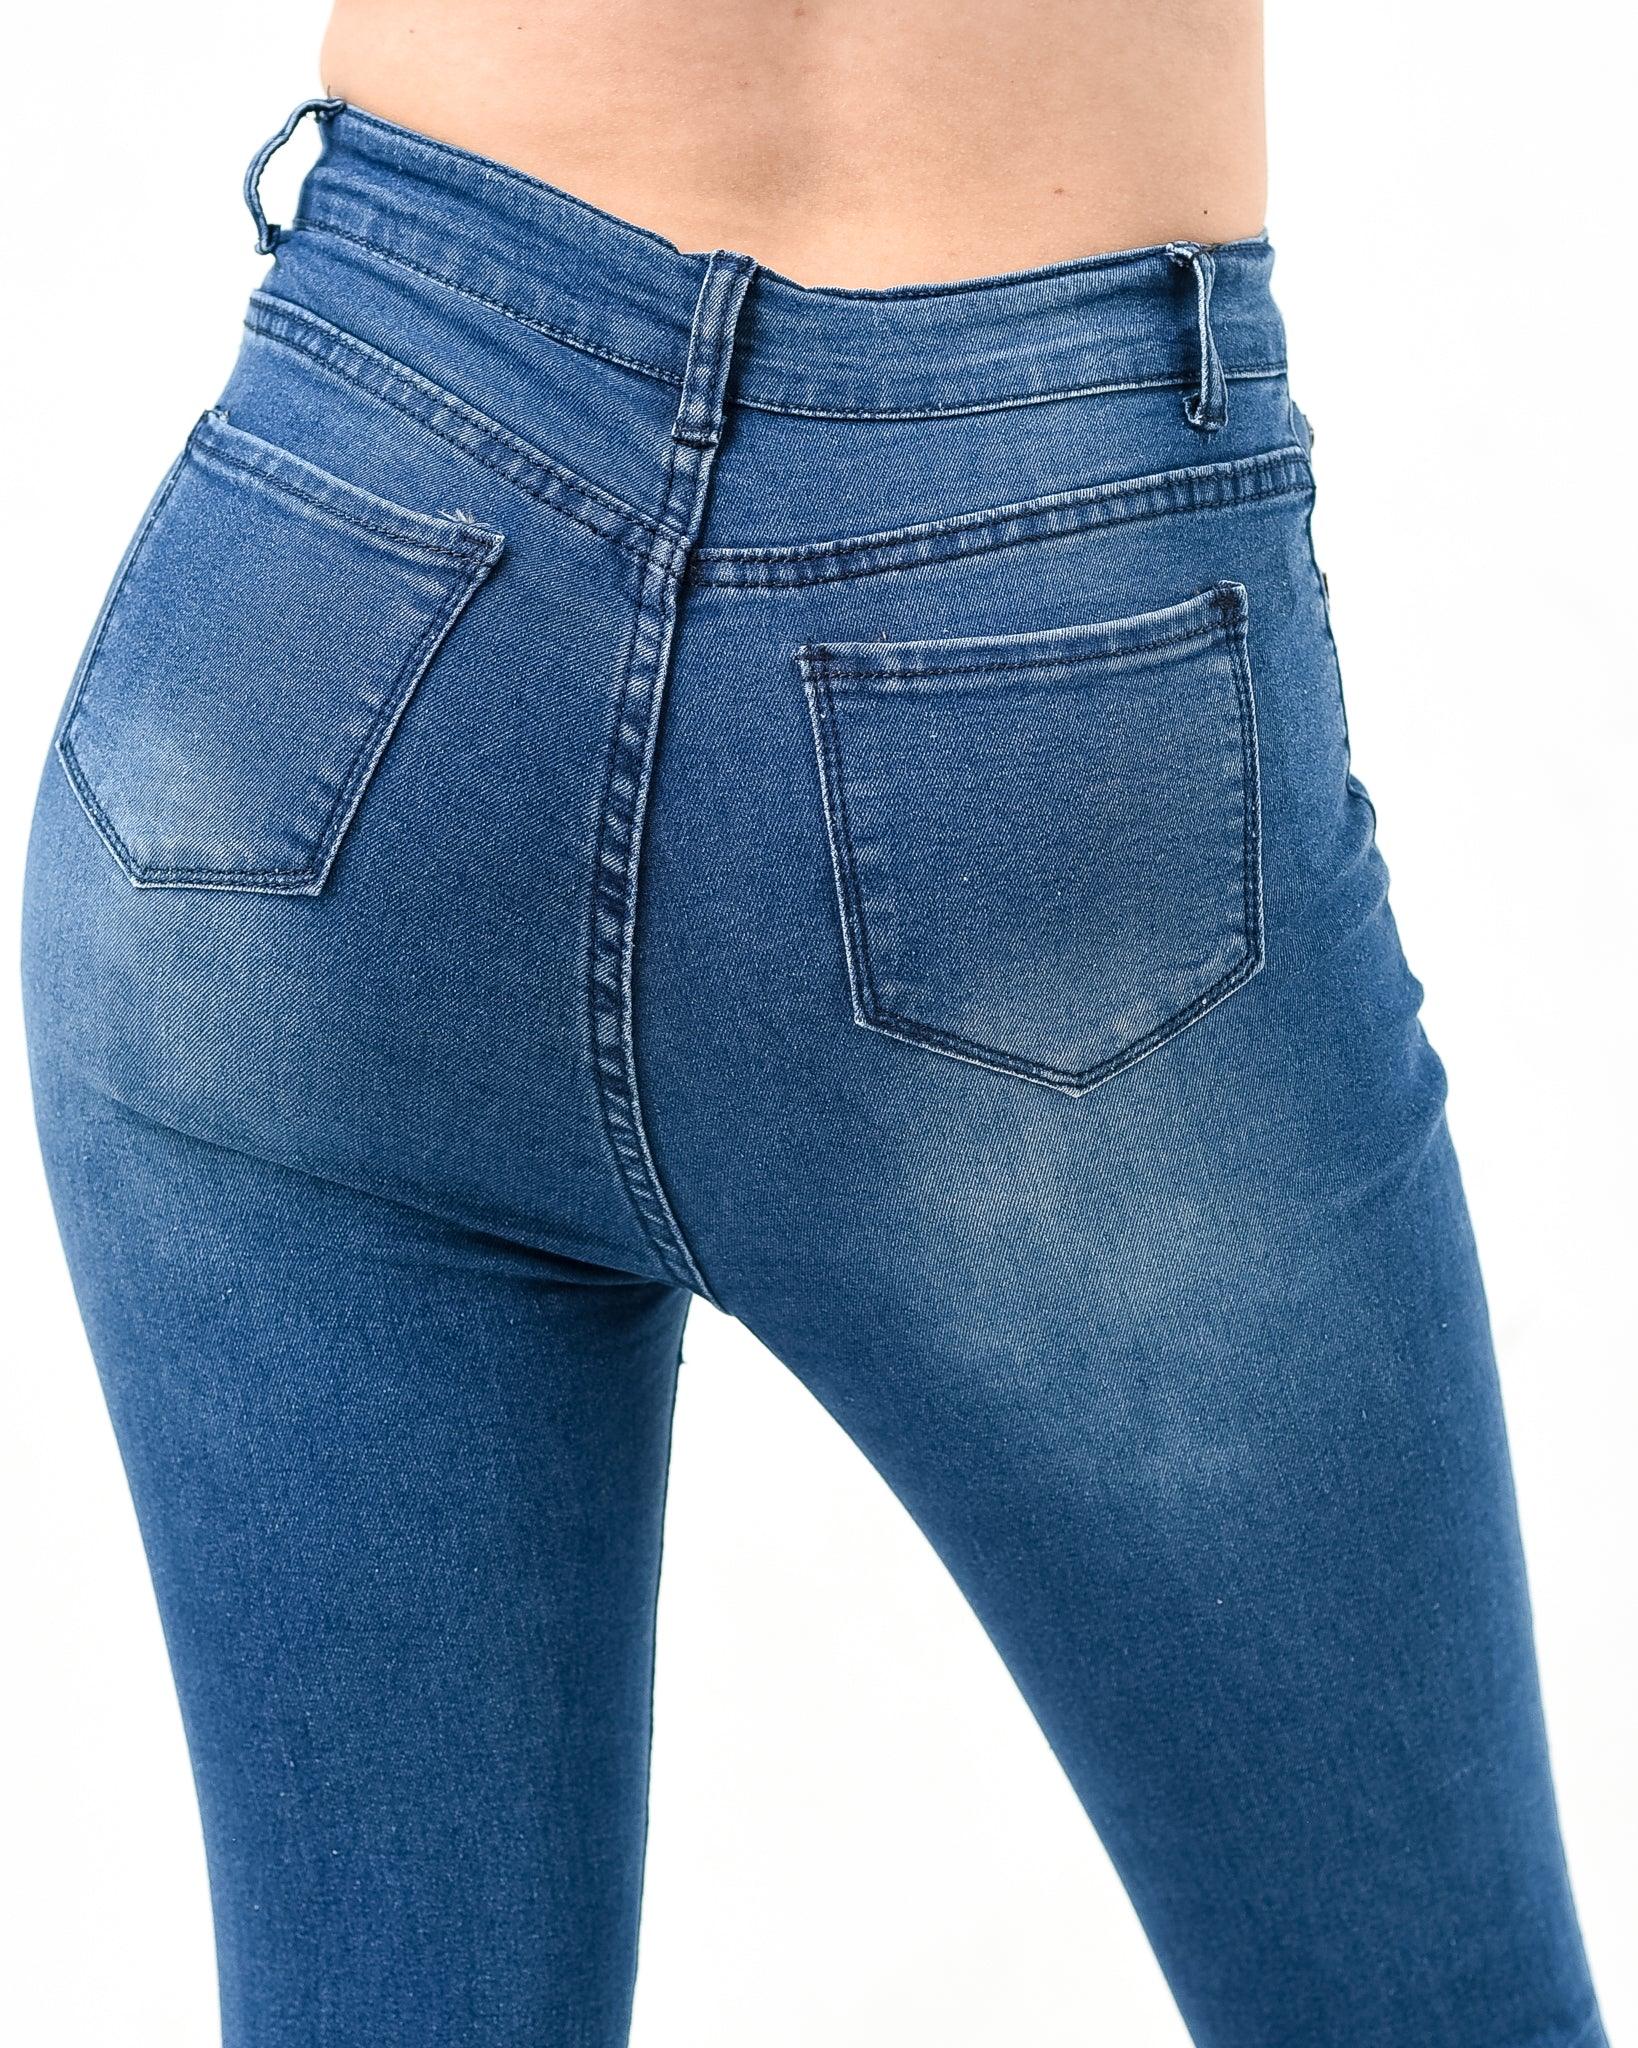 Skinny jeans ST2 - XD21